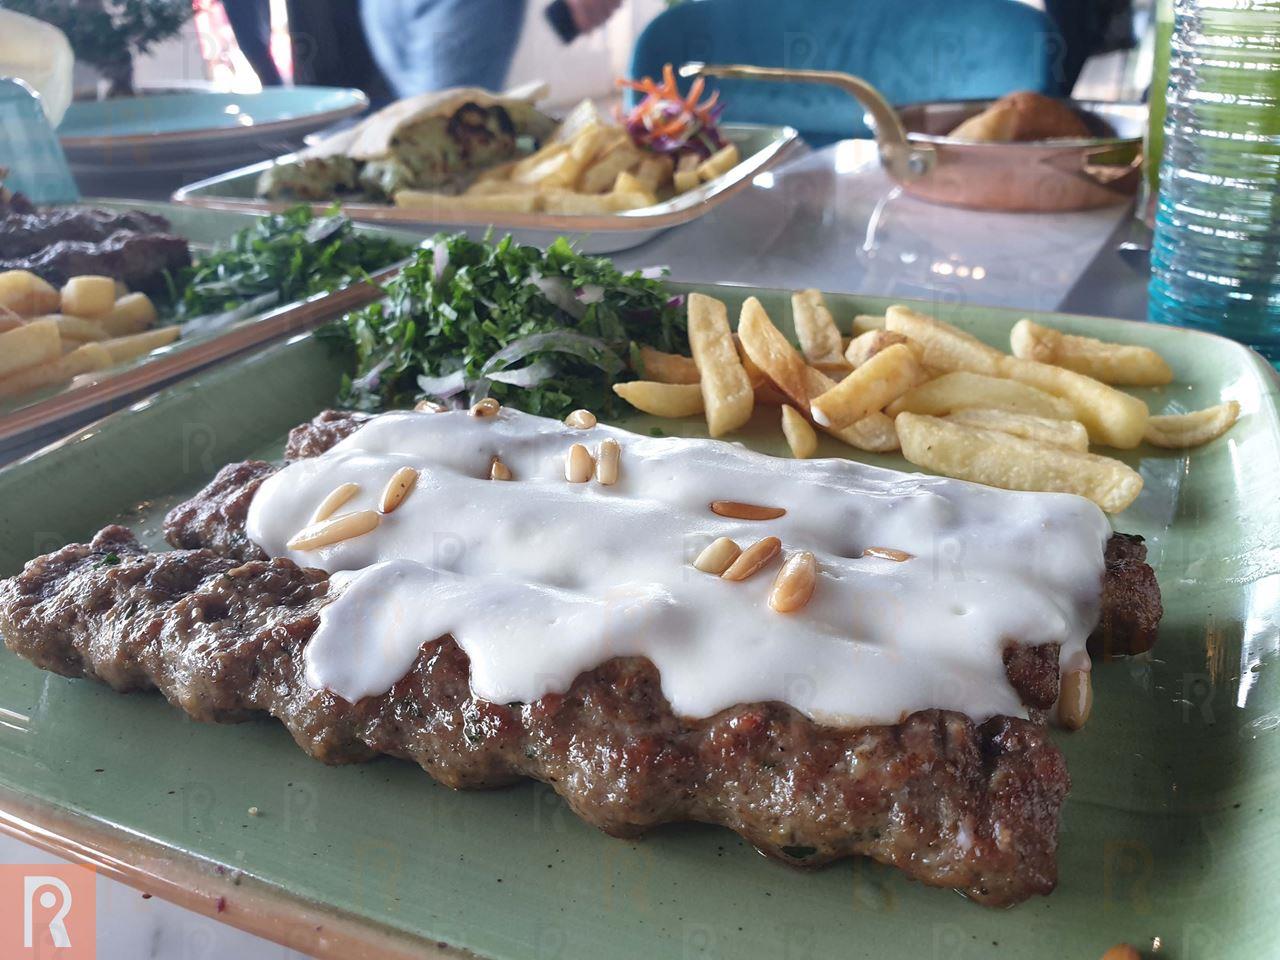 تجربتنا المميزة في مطعم "ميجانا" اللبناني الذي فتح أبوابه على شارع الخليج العربي